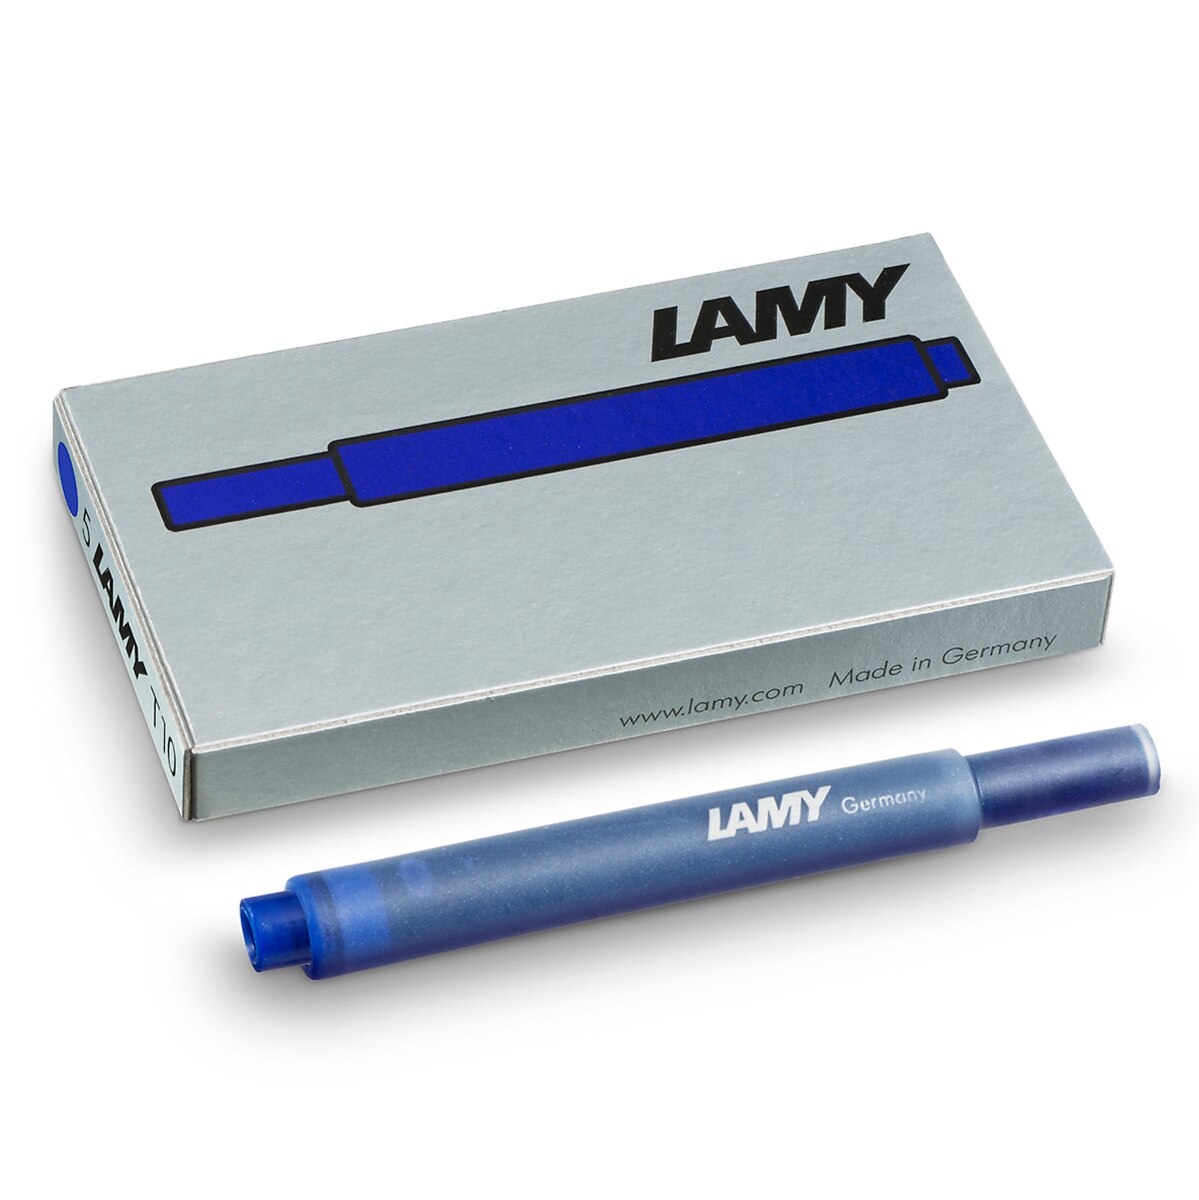 Lamy kit pluma fuente de alumino anodizado con cartuchos y block de notas